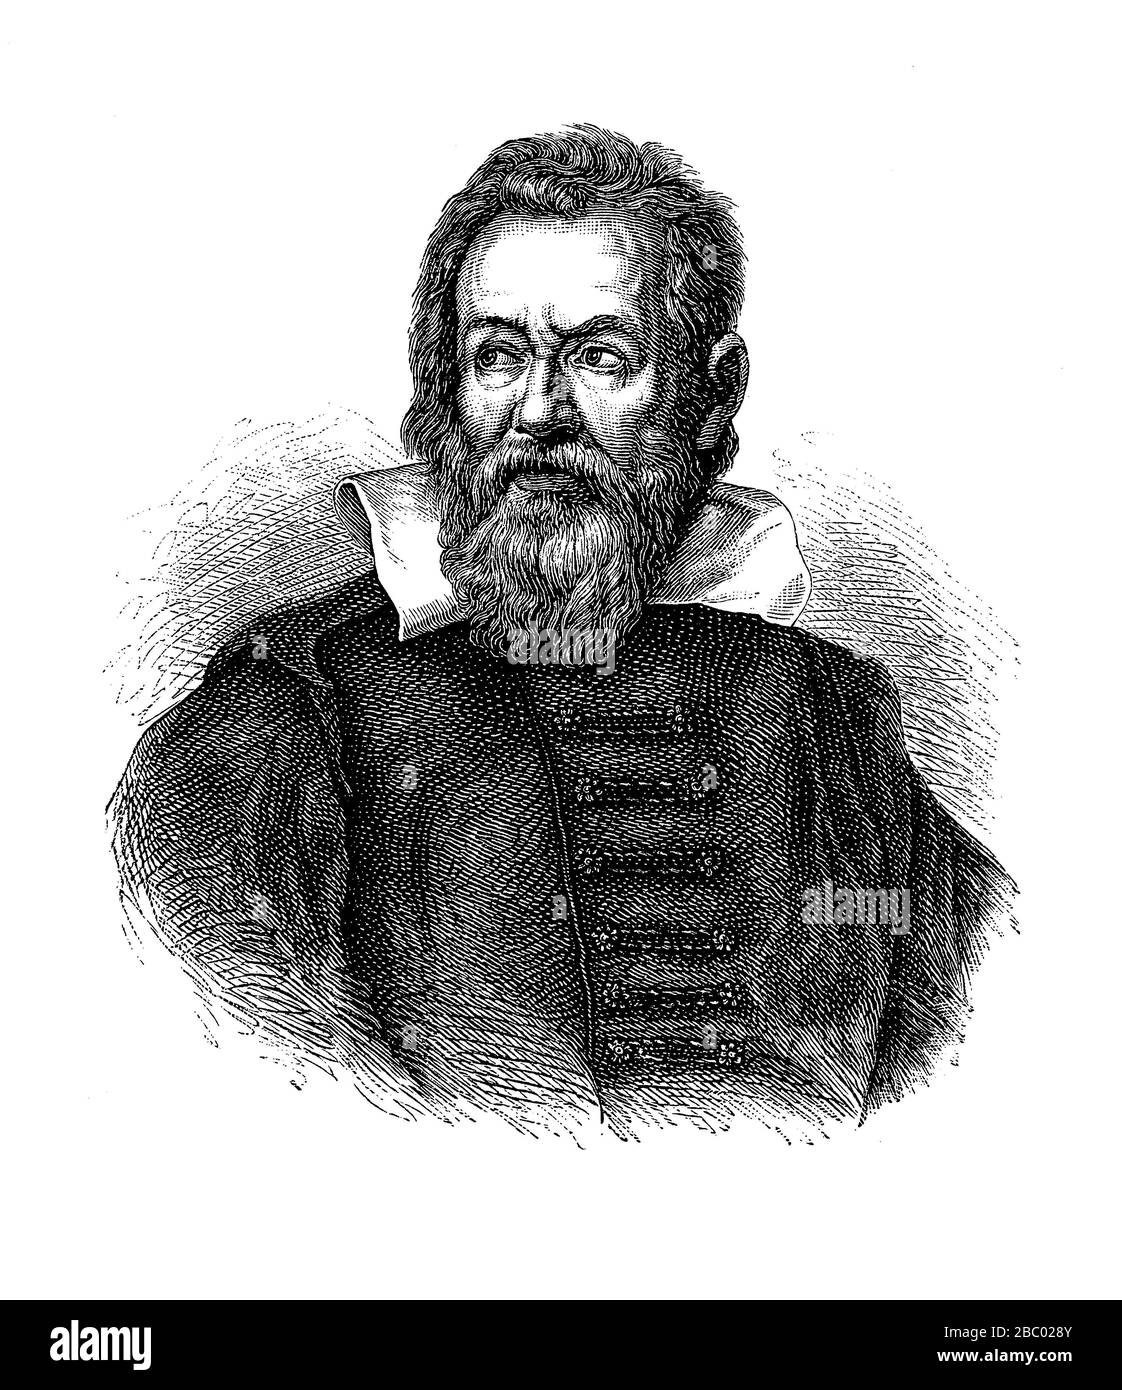 Ritratto di Galileo Galilei (1564 - 1642) astronomo italiano di Pisa, fisico e ingegnere, fondatore dell'astronomia osservazionale Foto Stock